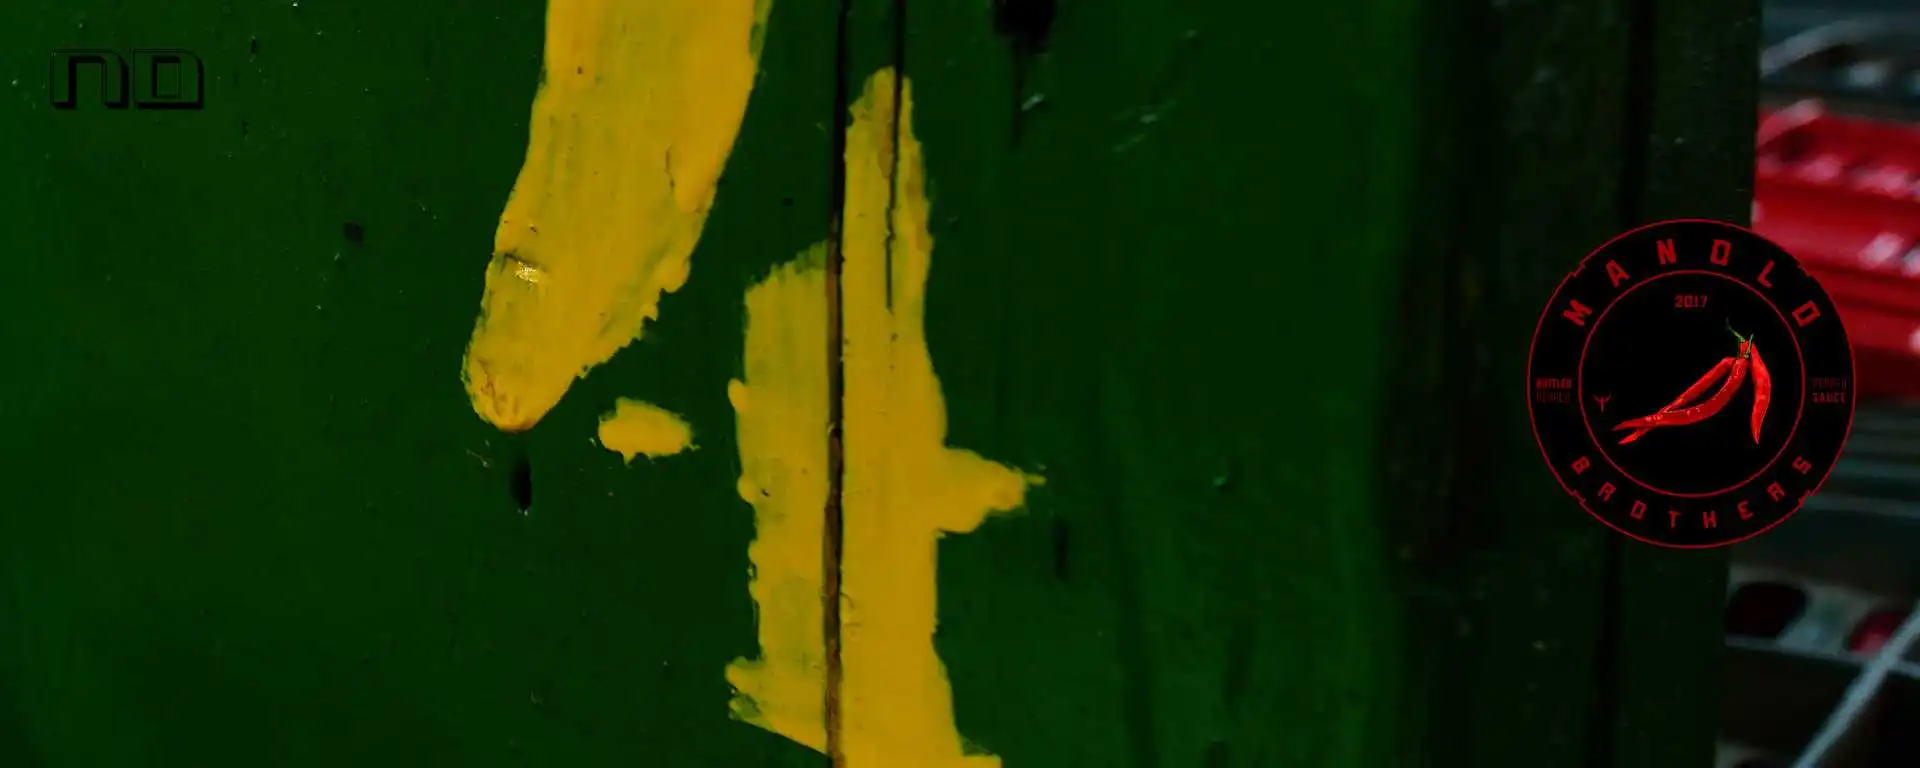 Banner de uma caixa de pimenta verde com 4 em amarelo, com logo da manolo brothers